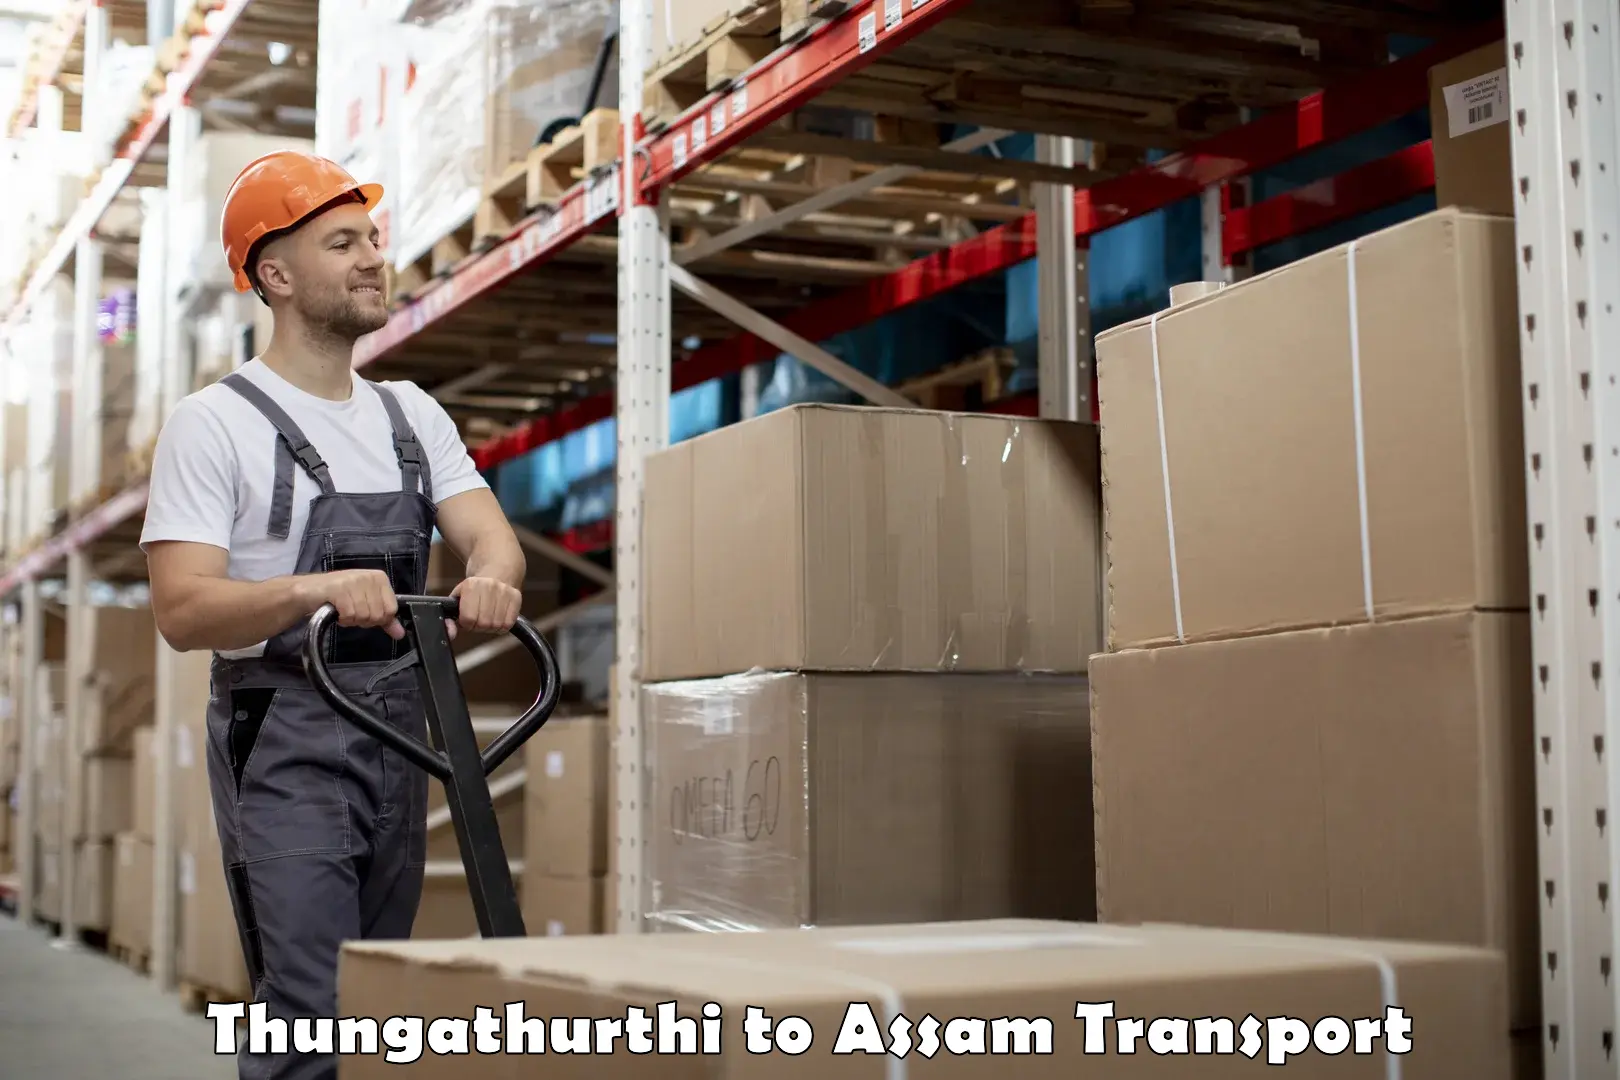 Cargo transportation services Thungathurthi to Assam